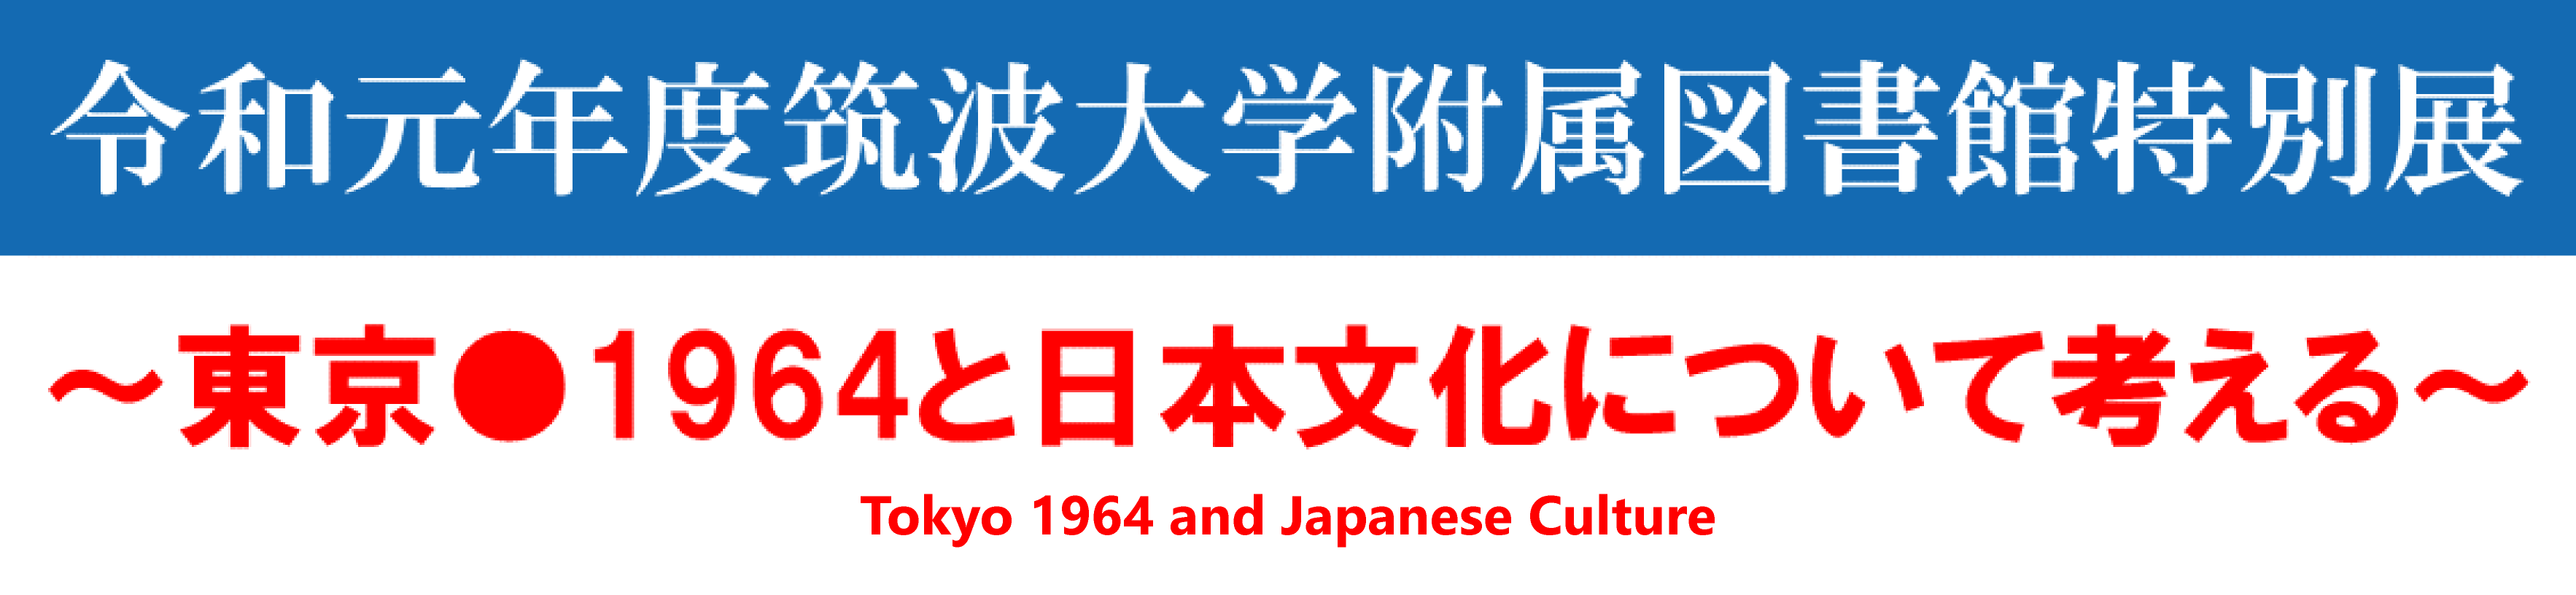 タイトル画像: 東京●1964と日本文化について考える